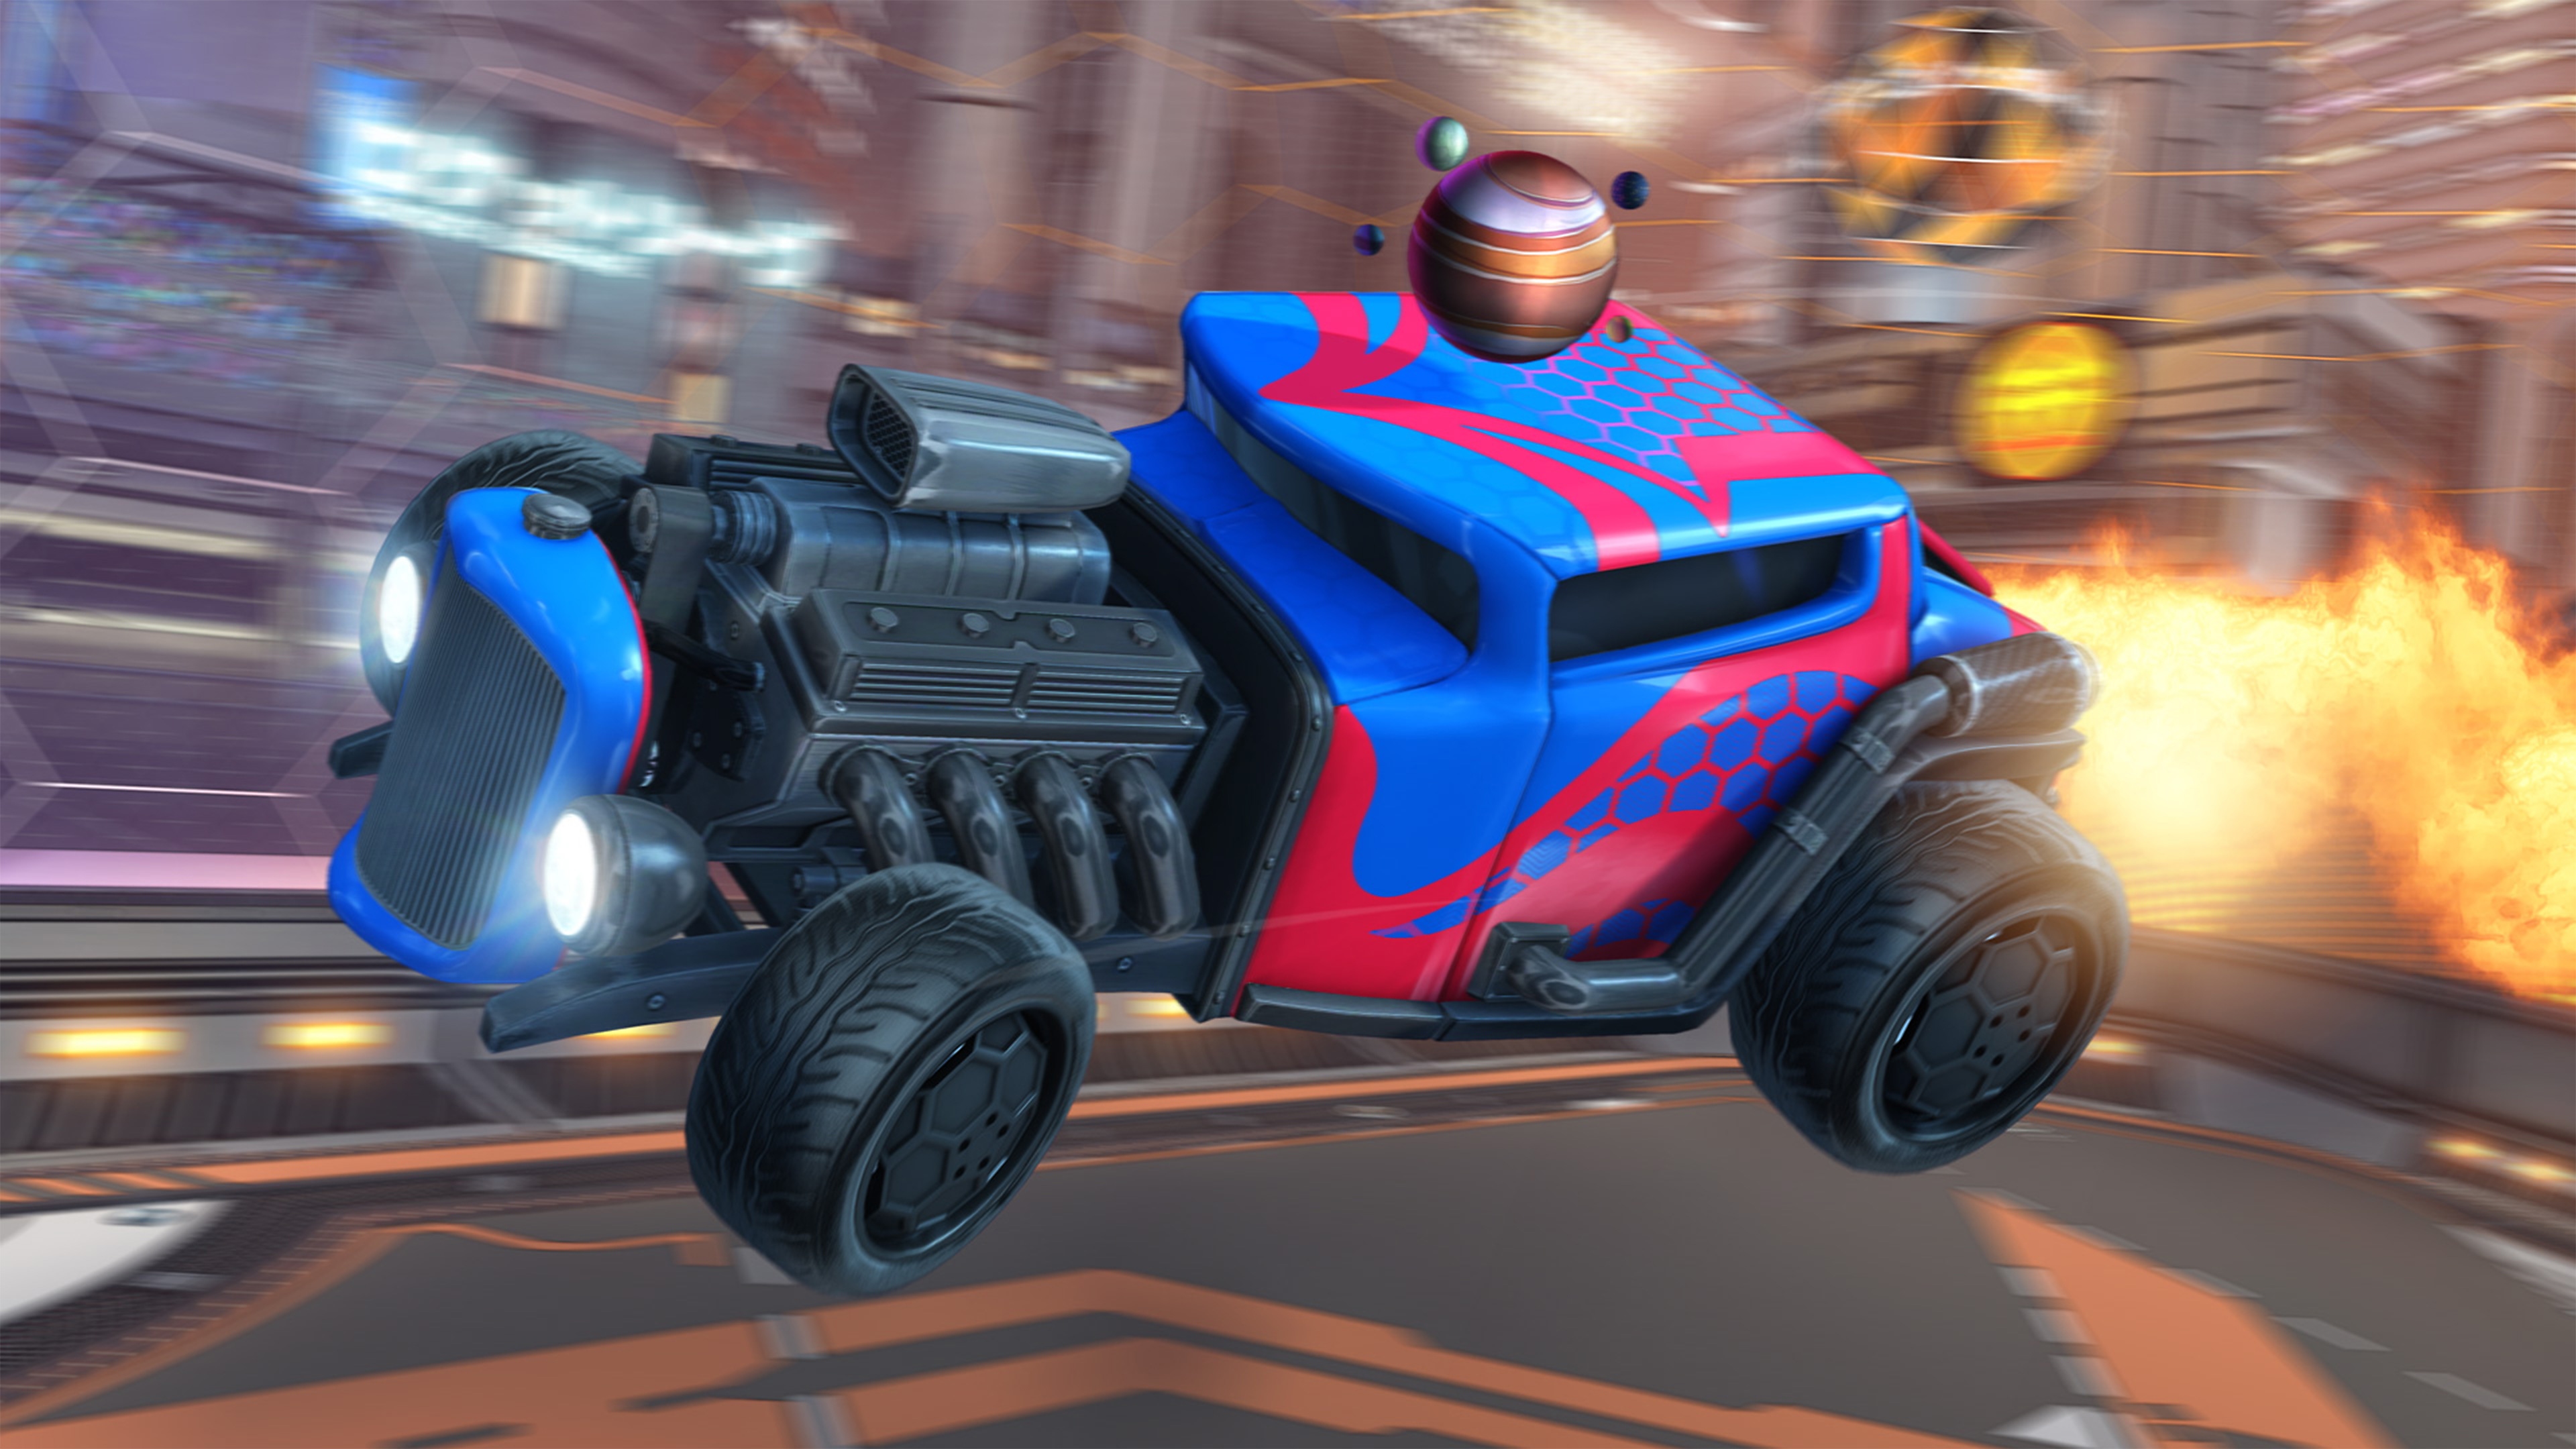 Capture d'écran de Rocket League montrant un bolide peint en rouge et bleu, dont le moteur est visible